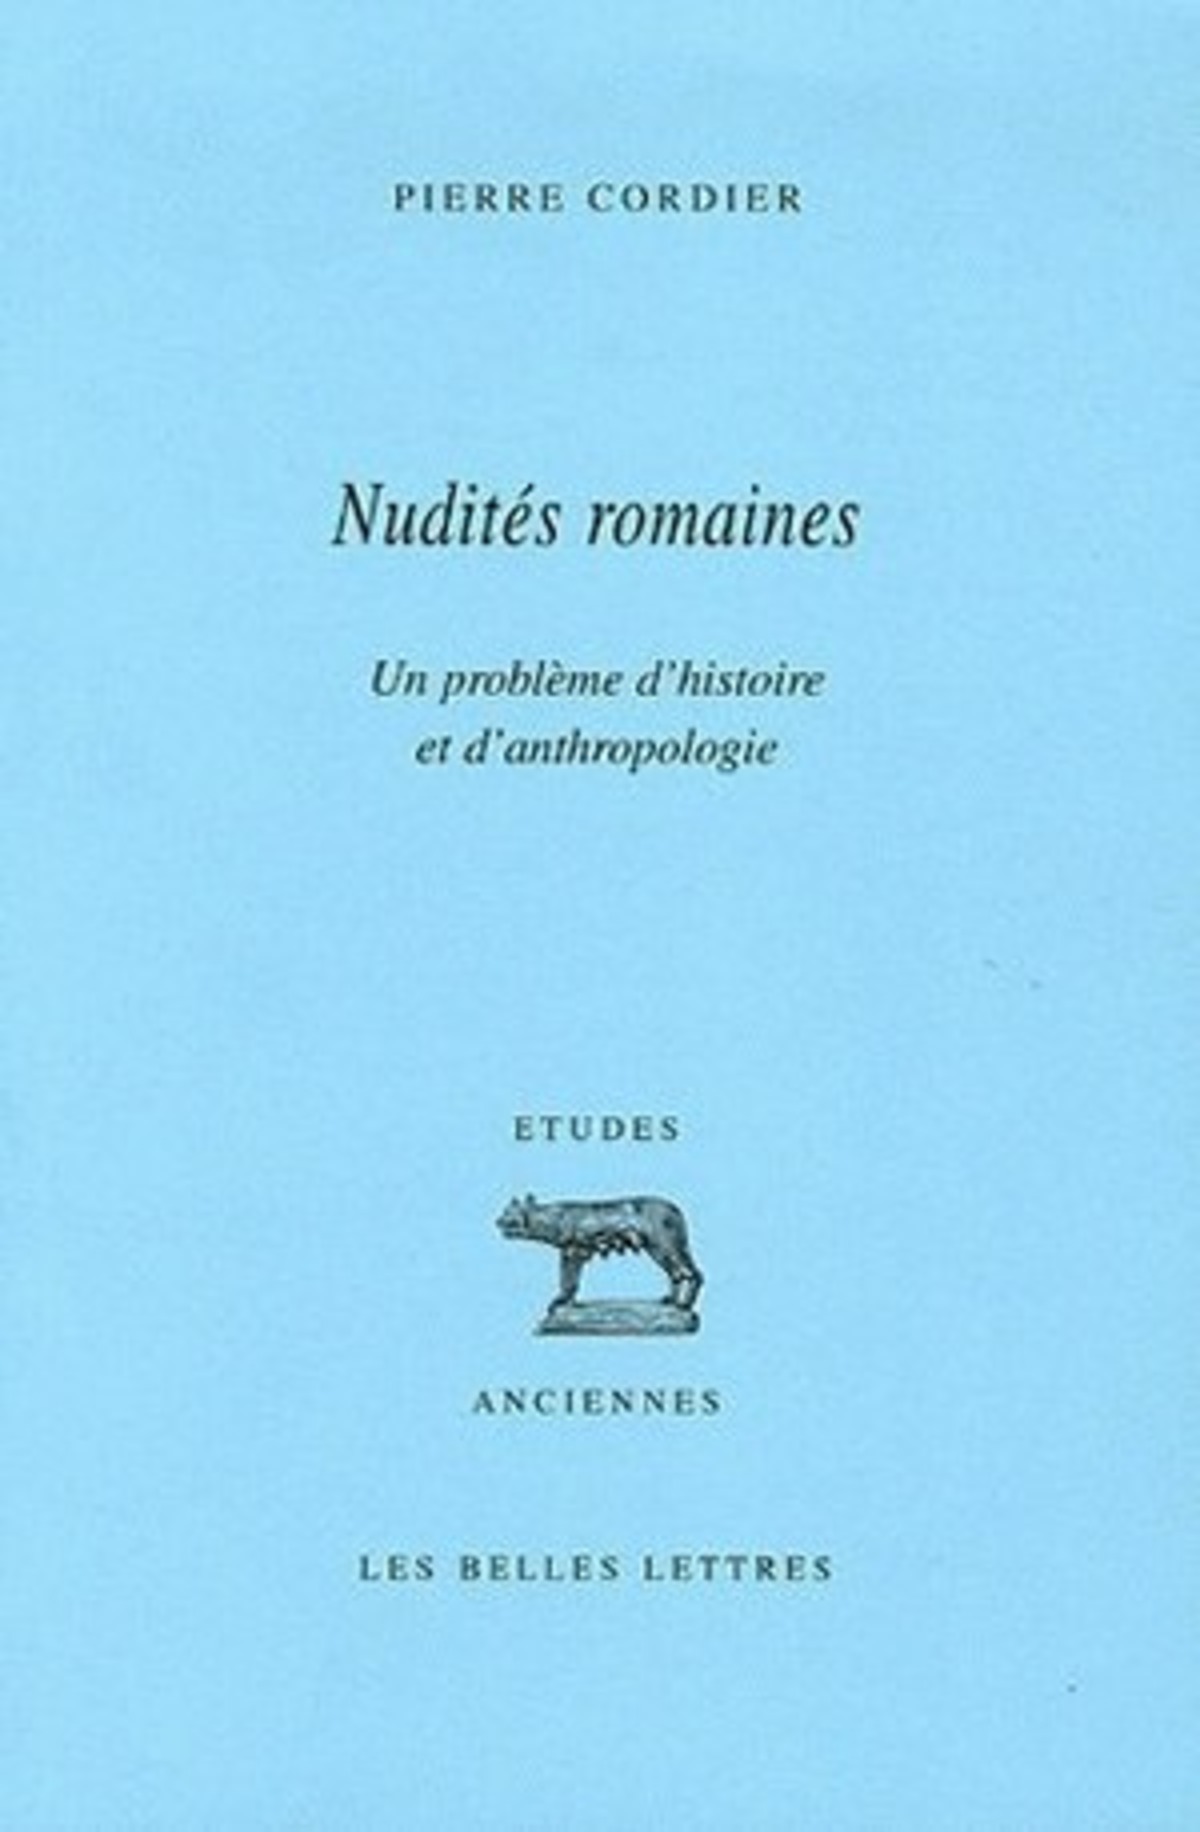 Nudités romaines